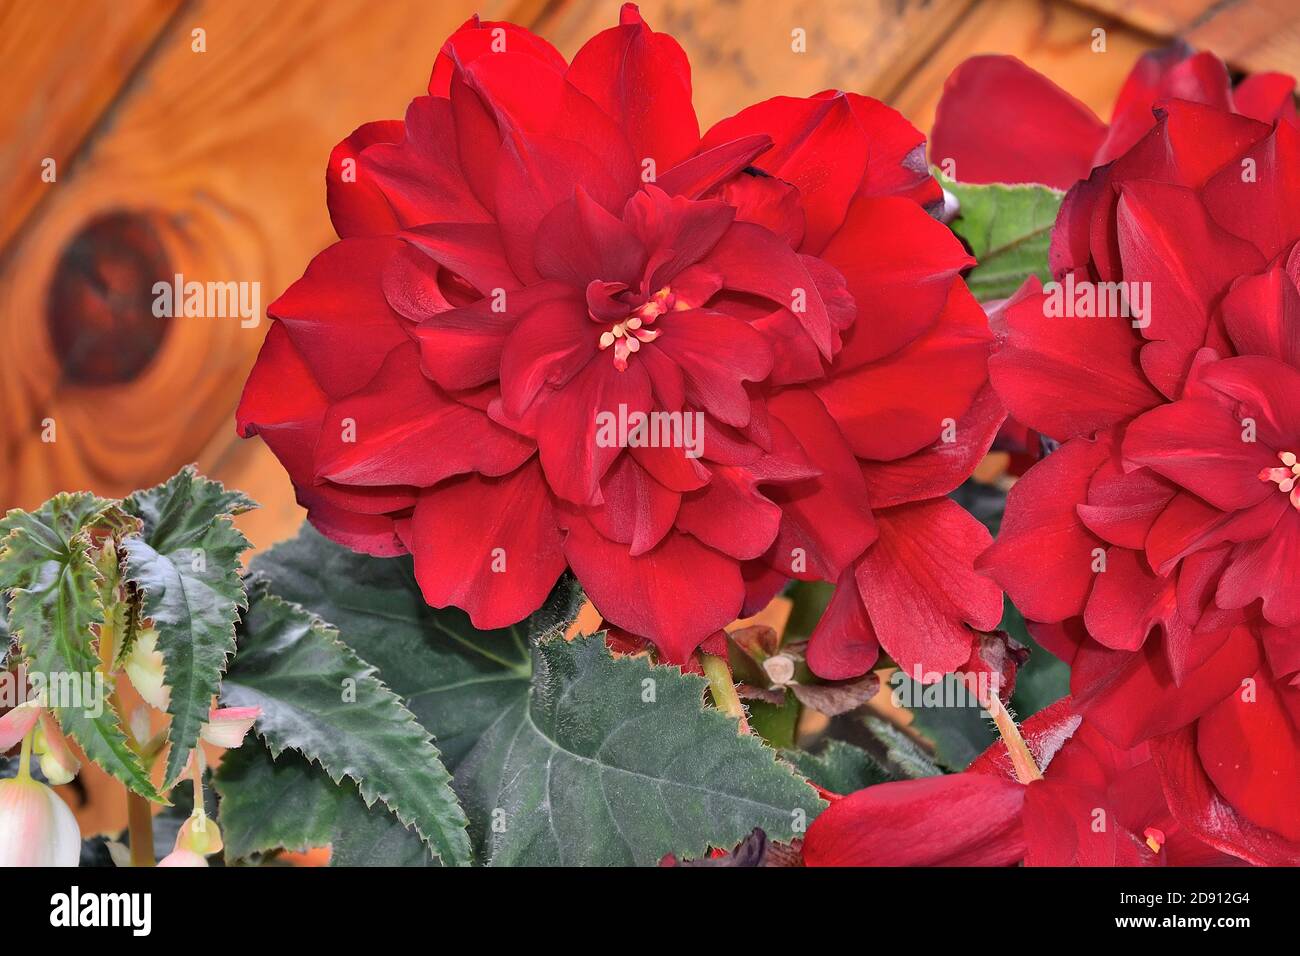 Leuchtend rote Blüten von Begonia tuberous oder (Begonia tuberhybrida) - dekorative großblütige Pflanze aus der Nähe auf verschwommenem Hintergrund. Kann sowohl a angebaut werden Stockfoto